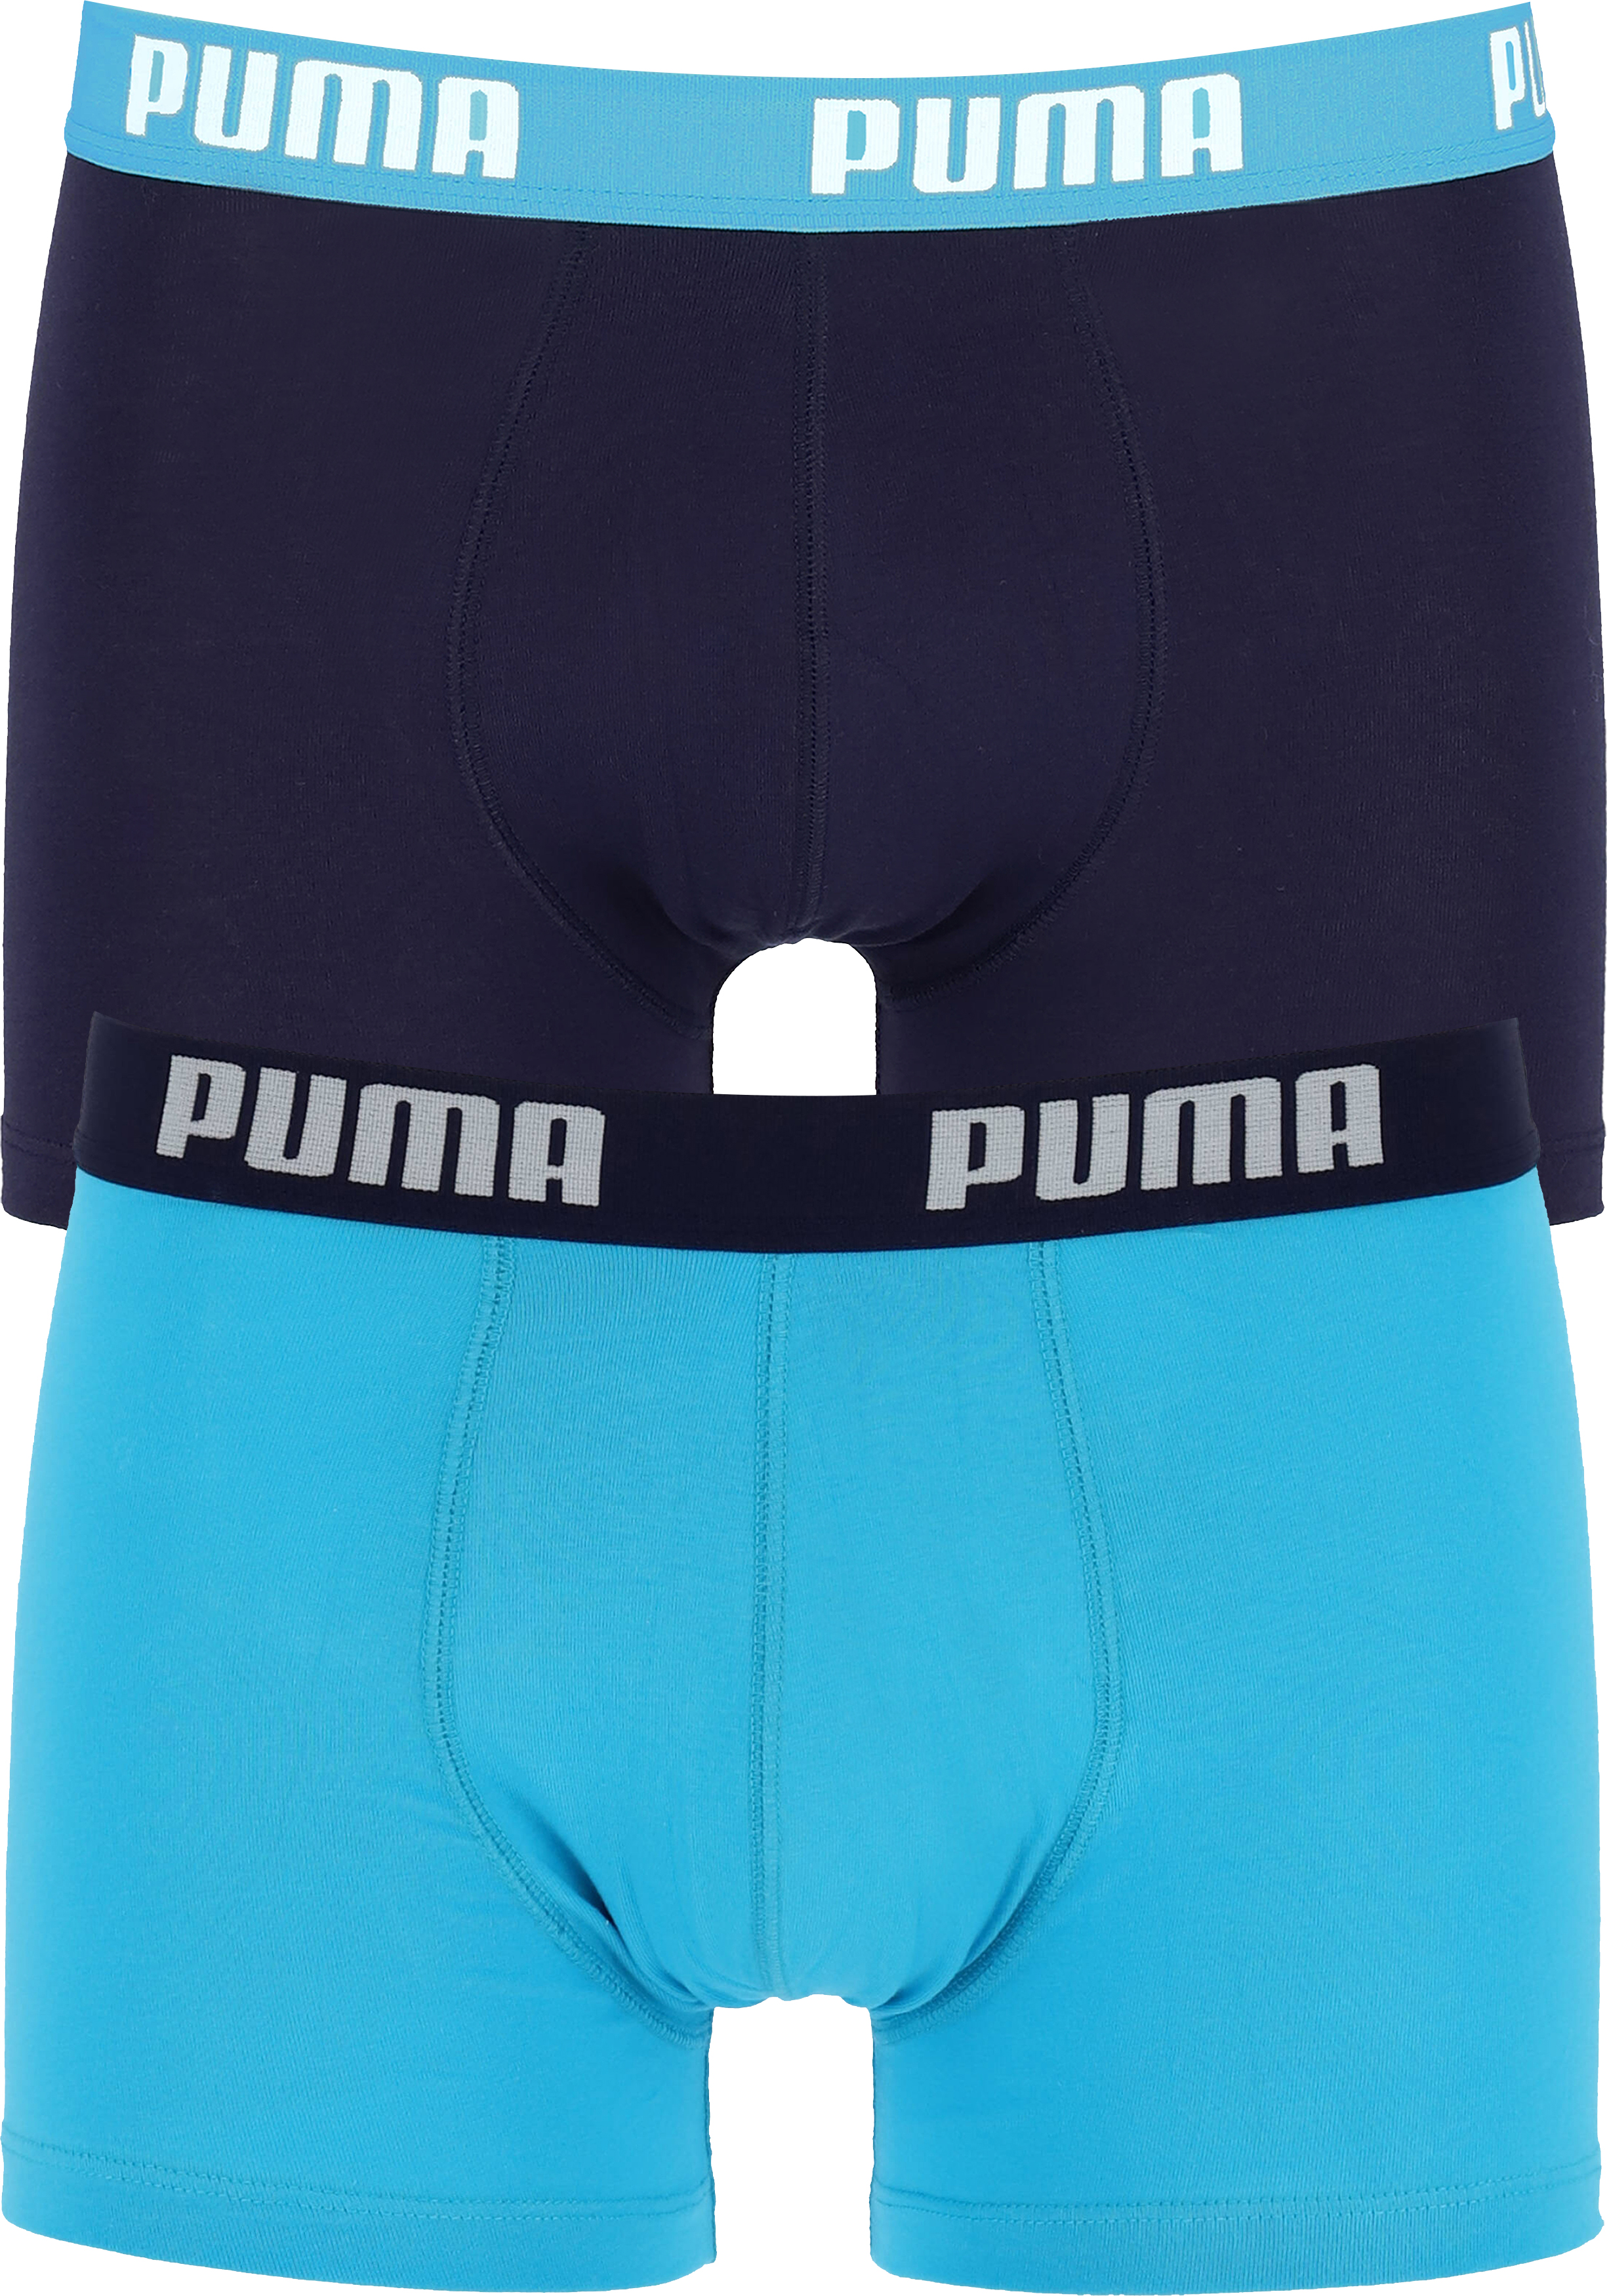 Puma Basic heren (2-pack), aqua en blauw - vakantie DEALS: bestel vele artikelen van topmerken korting